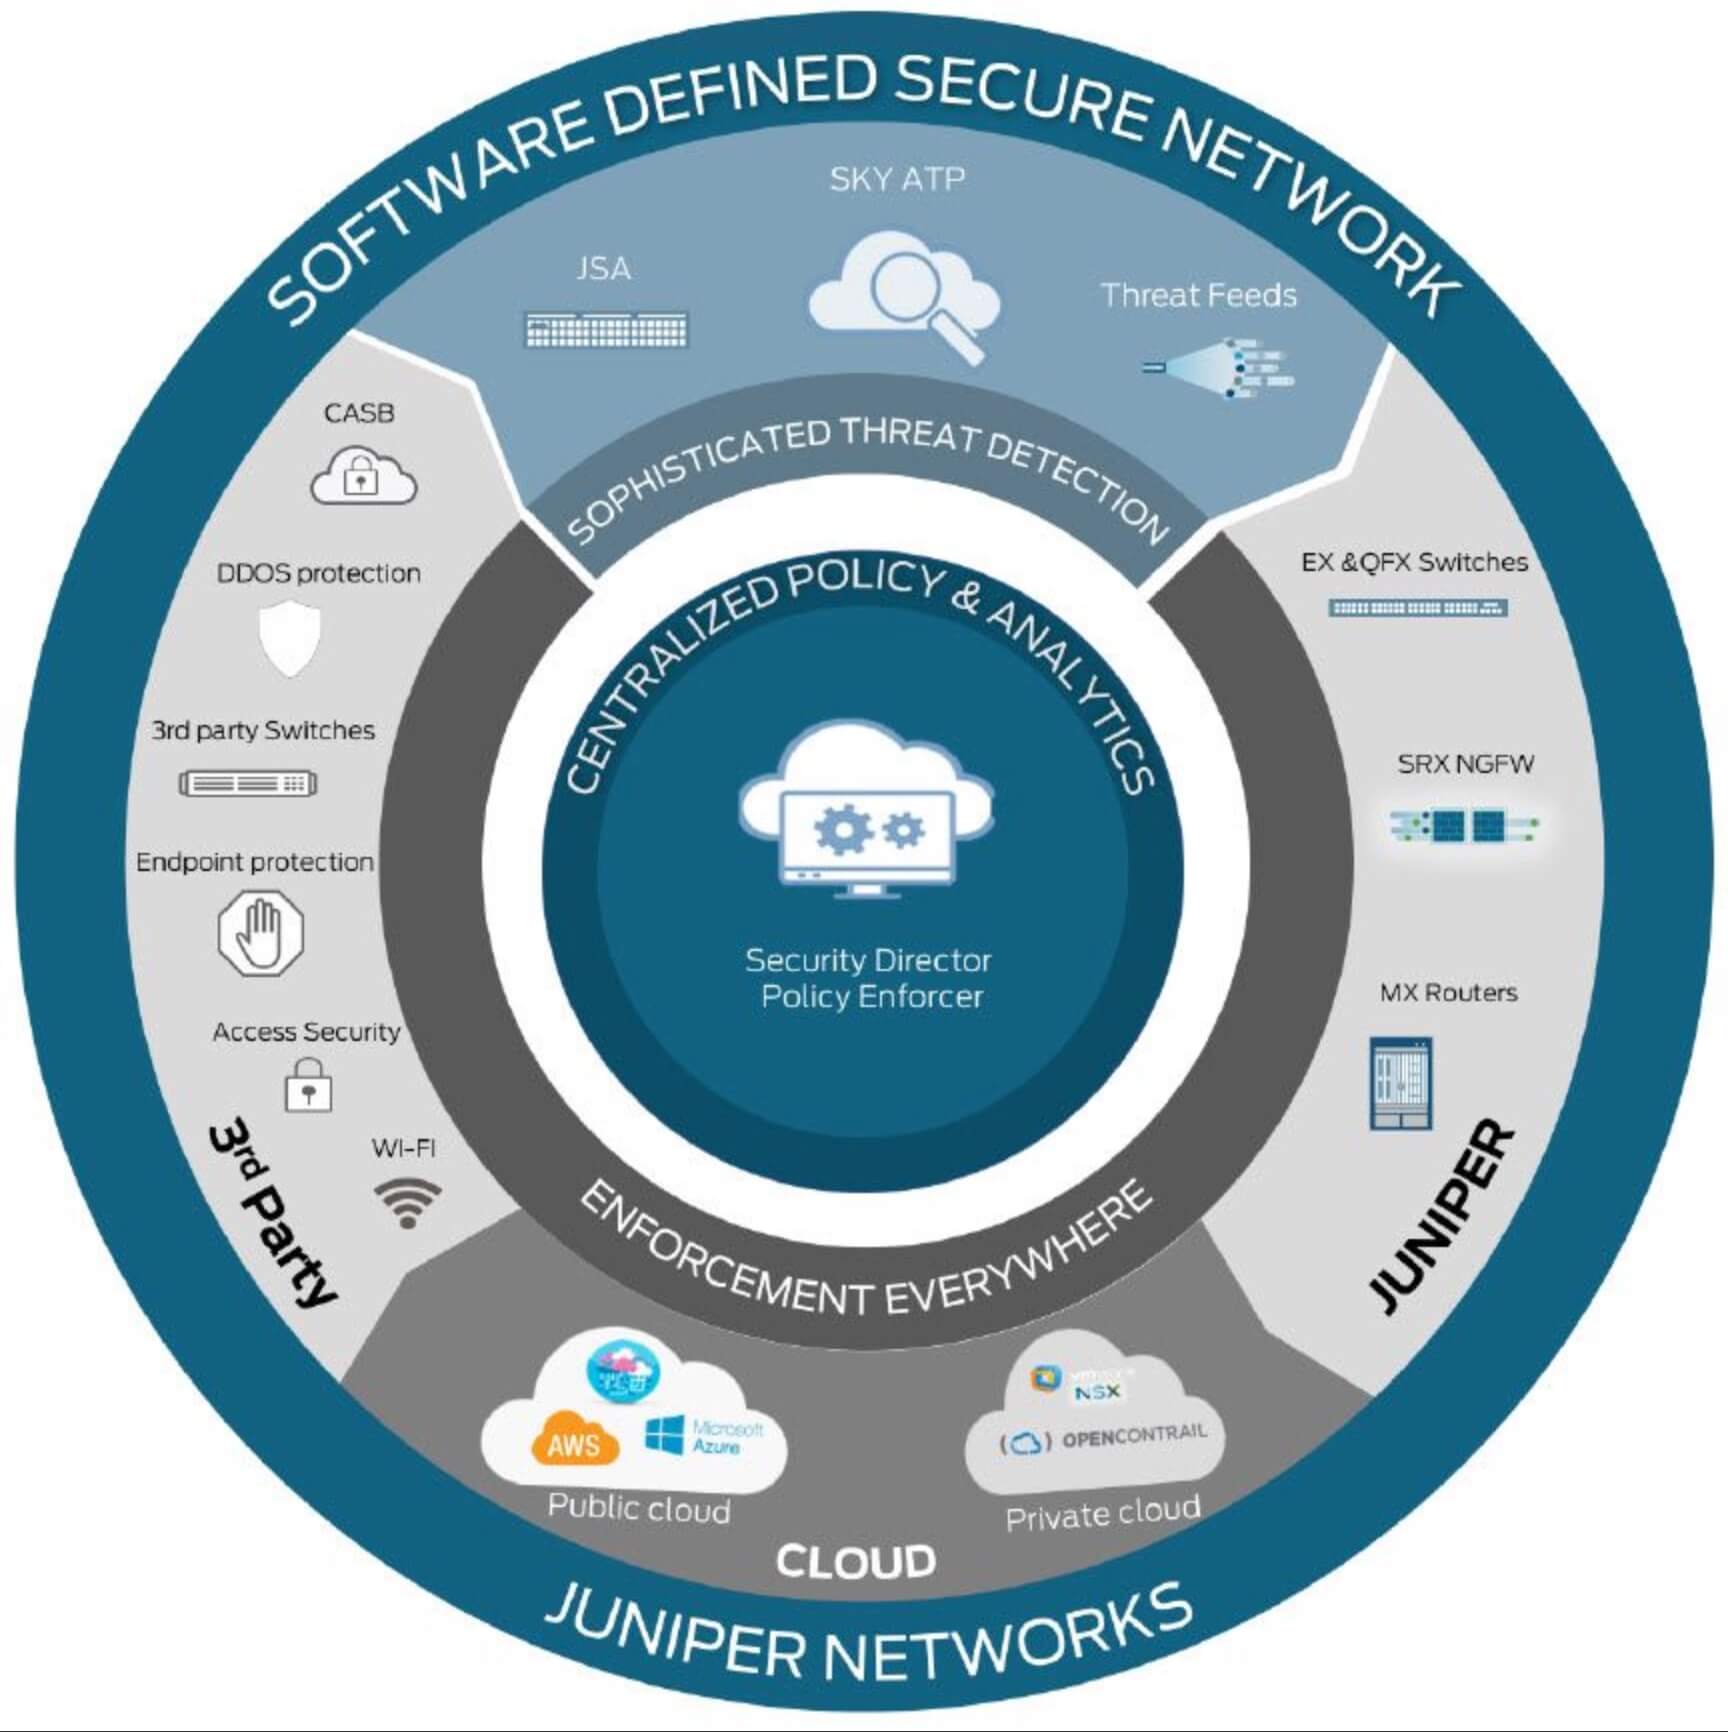 Abbildung zum Software Defined Secure Network von Juniper Networks.